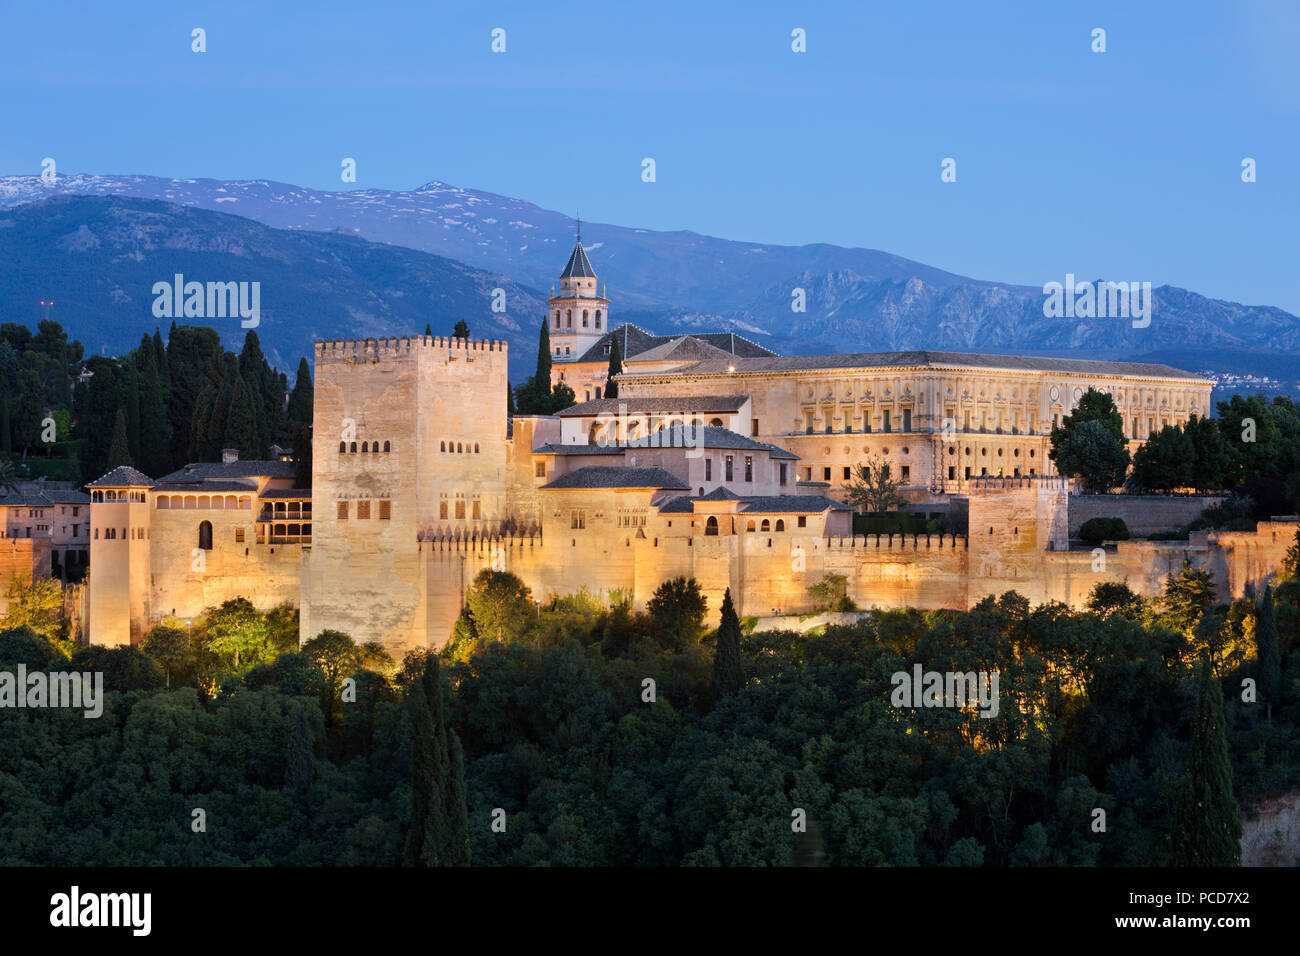 Die Alhambra, Weltkulturerbe der UNESCO, und die Berge der Sierra Nevada vom Mirador de San Nicolas, Granada, Andalusien, Spanien, Europa Stockfoto